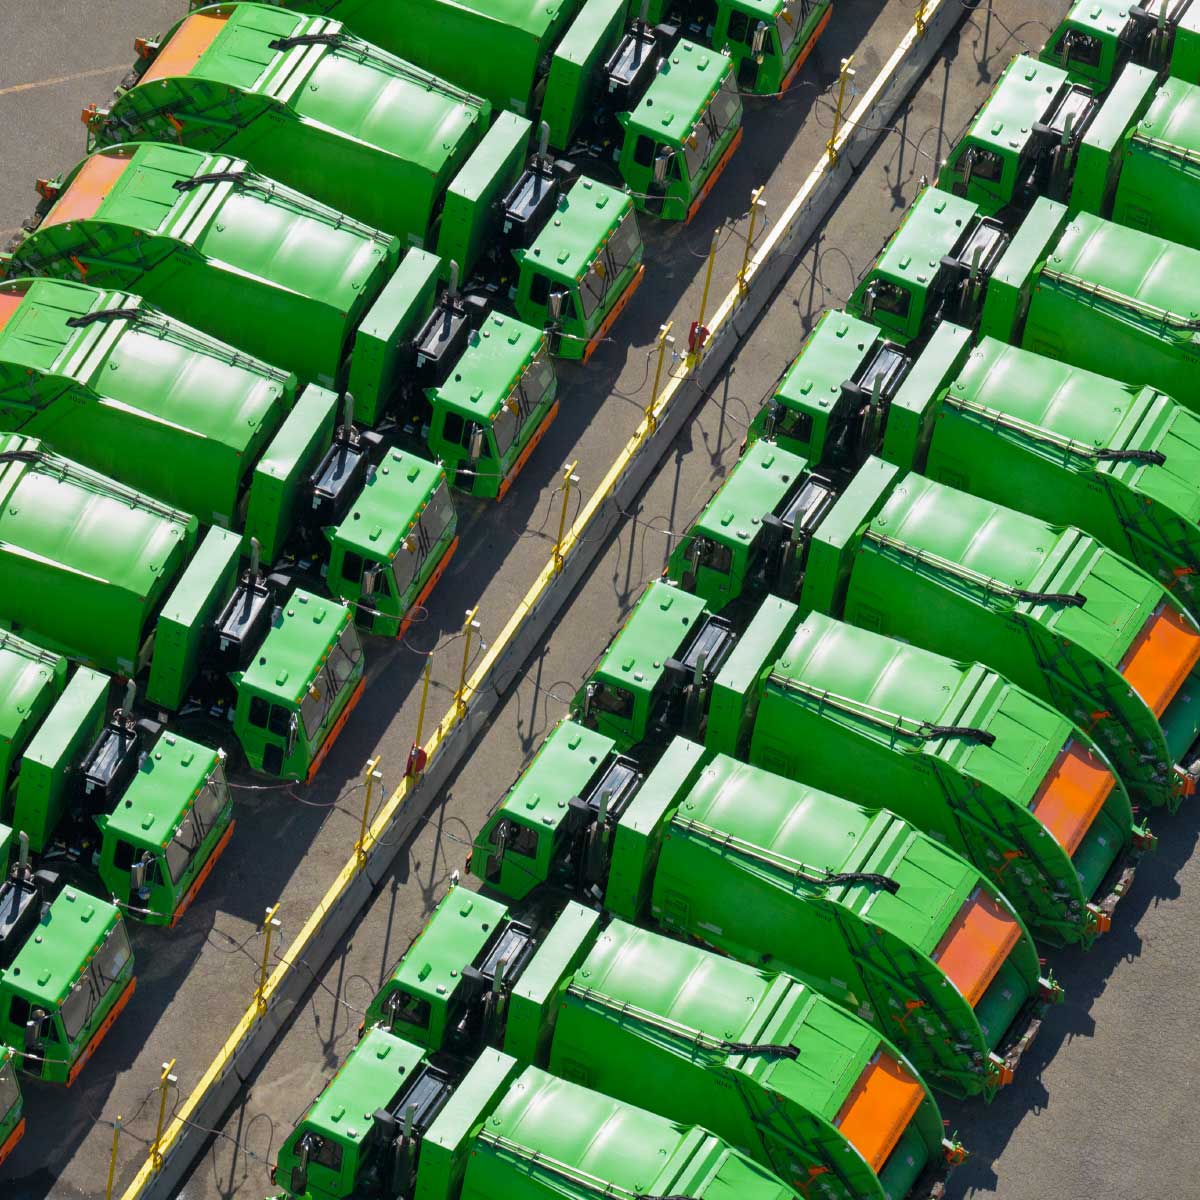 fleet of garbage disposal trucks